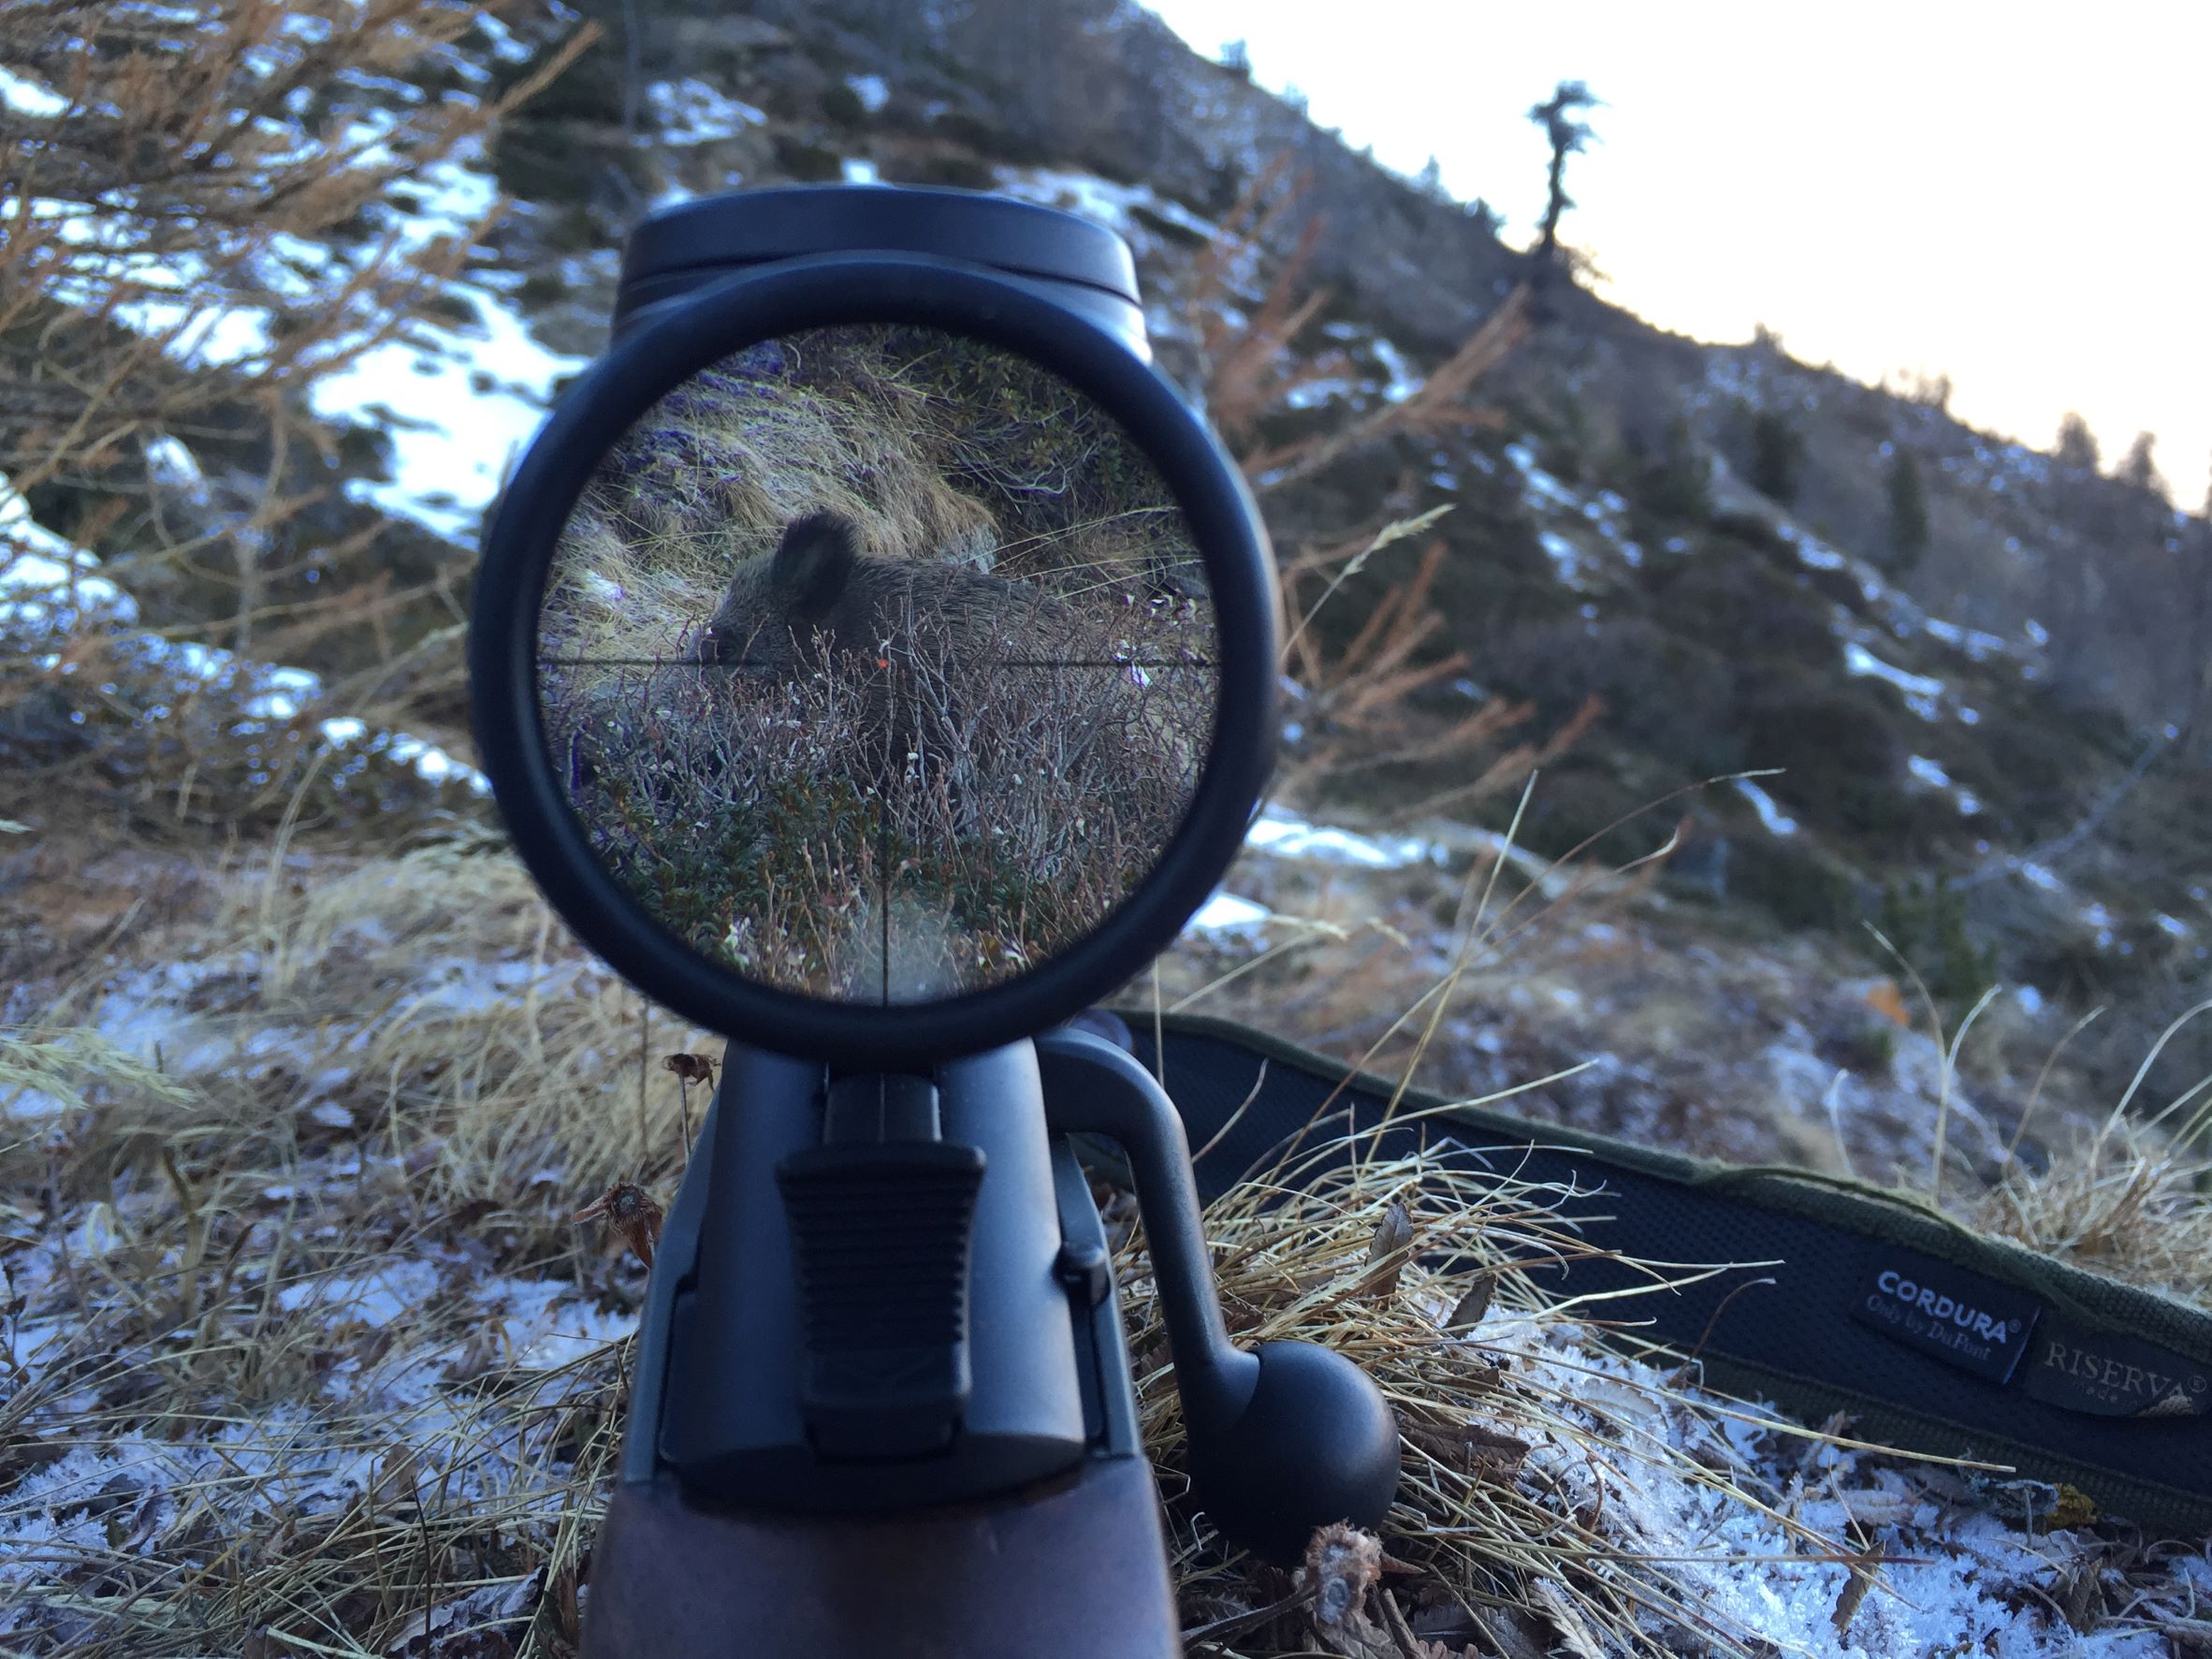 In condizioni di luce scarsa, il miglior cannocchiale da caccia- il Leica Magnus 2.4-16x56 - offre luminosità pari a quella percepita nell'ambiente a occhio nudo, contrasti perfetti e sagoma dell'animale che si stacca dallo sfondo, immagine perfetta e senza riflessi fino ai bordi del campo visivo, come se tra l'occhio e l'animale non ci fosse nulla.